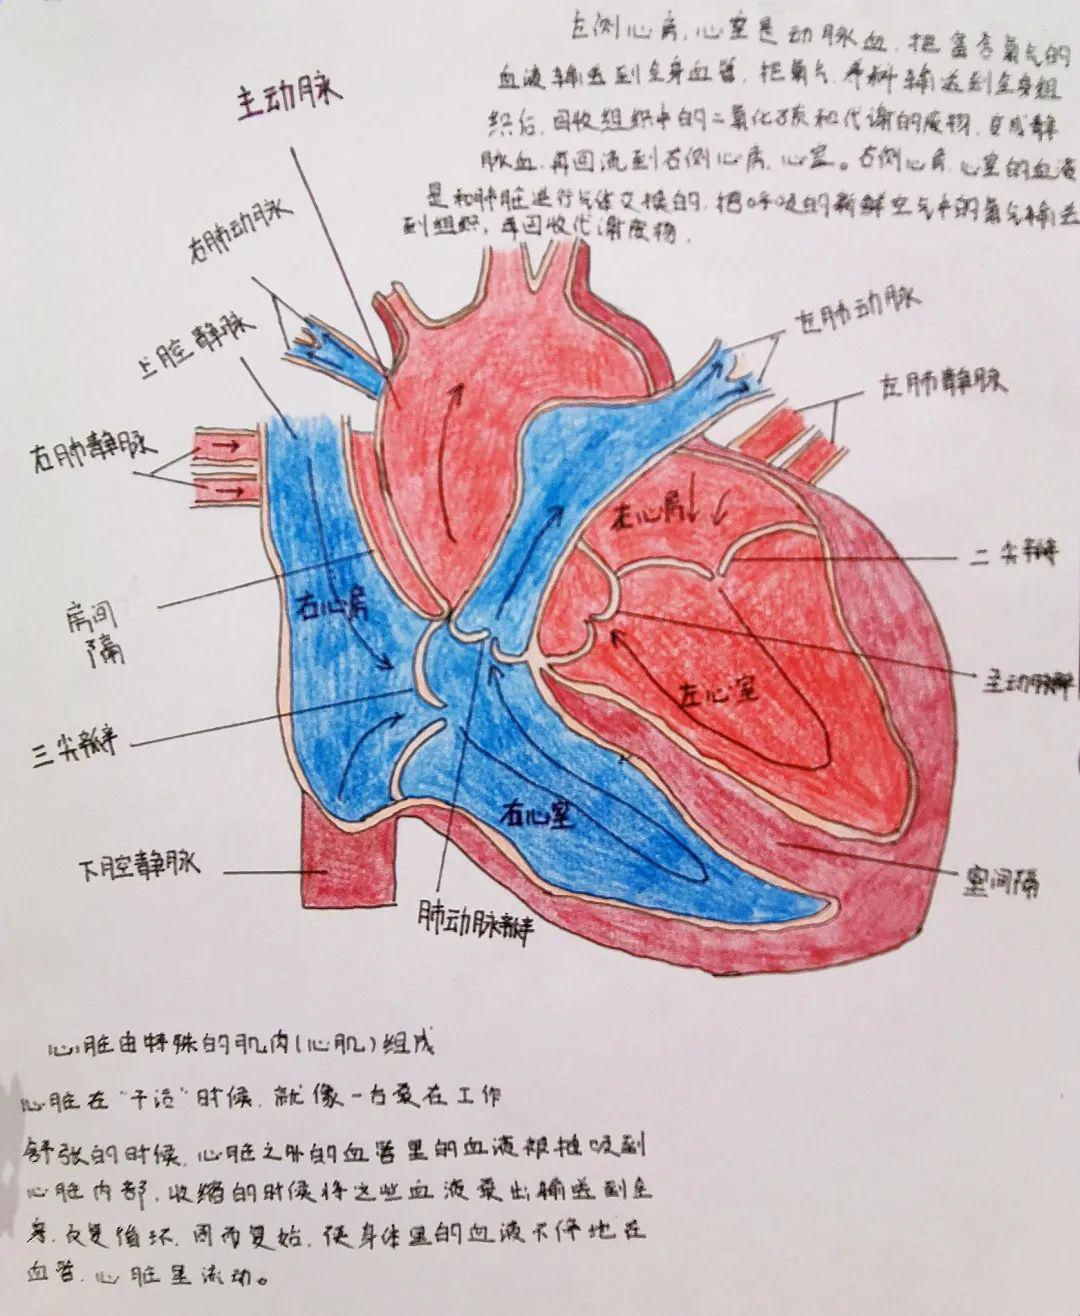 哦对了,我还有个团队——  心血管系统,是由我(心脏),每一层动脉